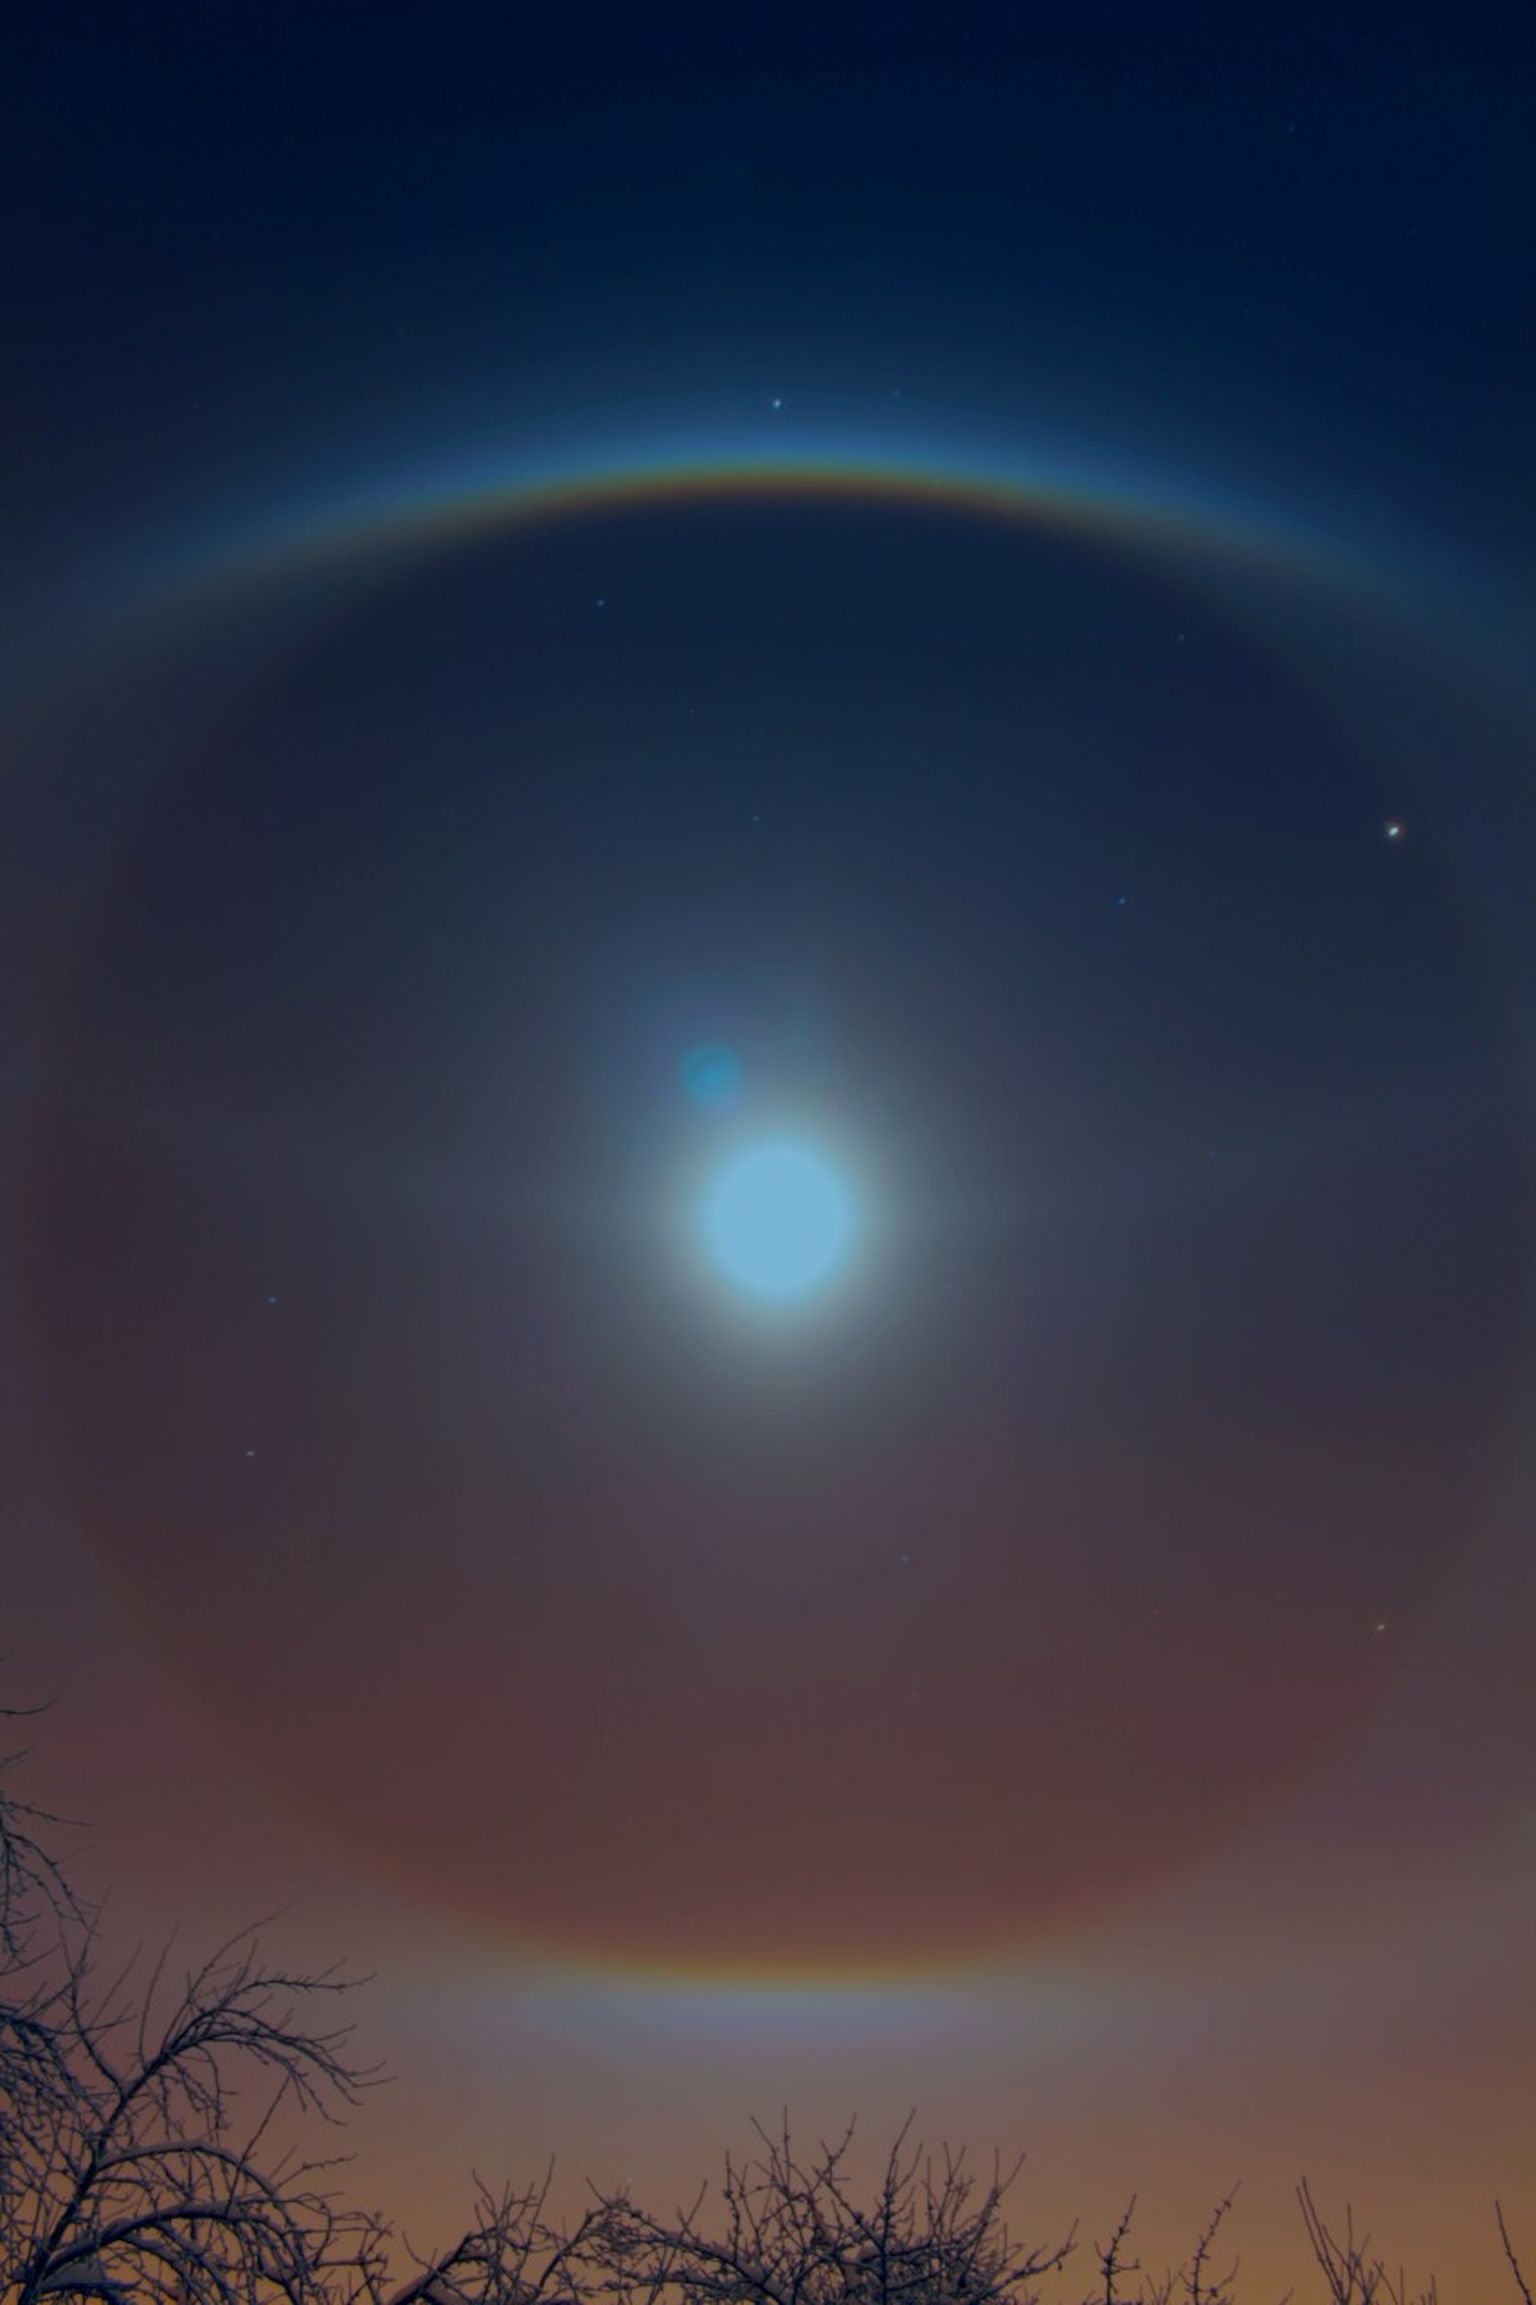 Kuu ümber tekkinud valgusrõngas pildistatult 9. detsembri õhtul Viljandis